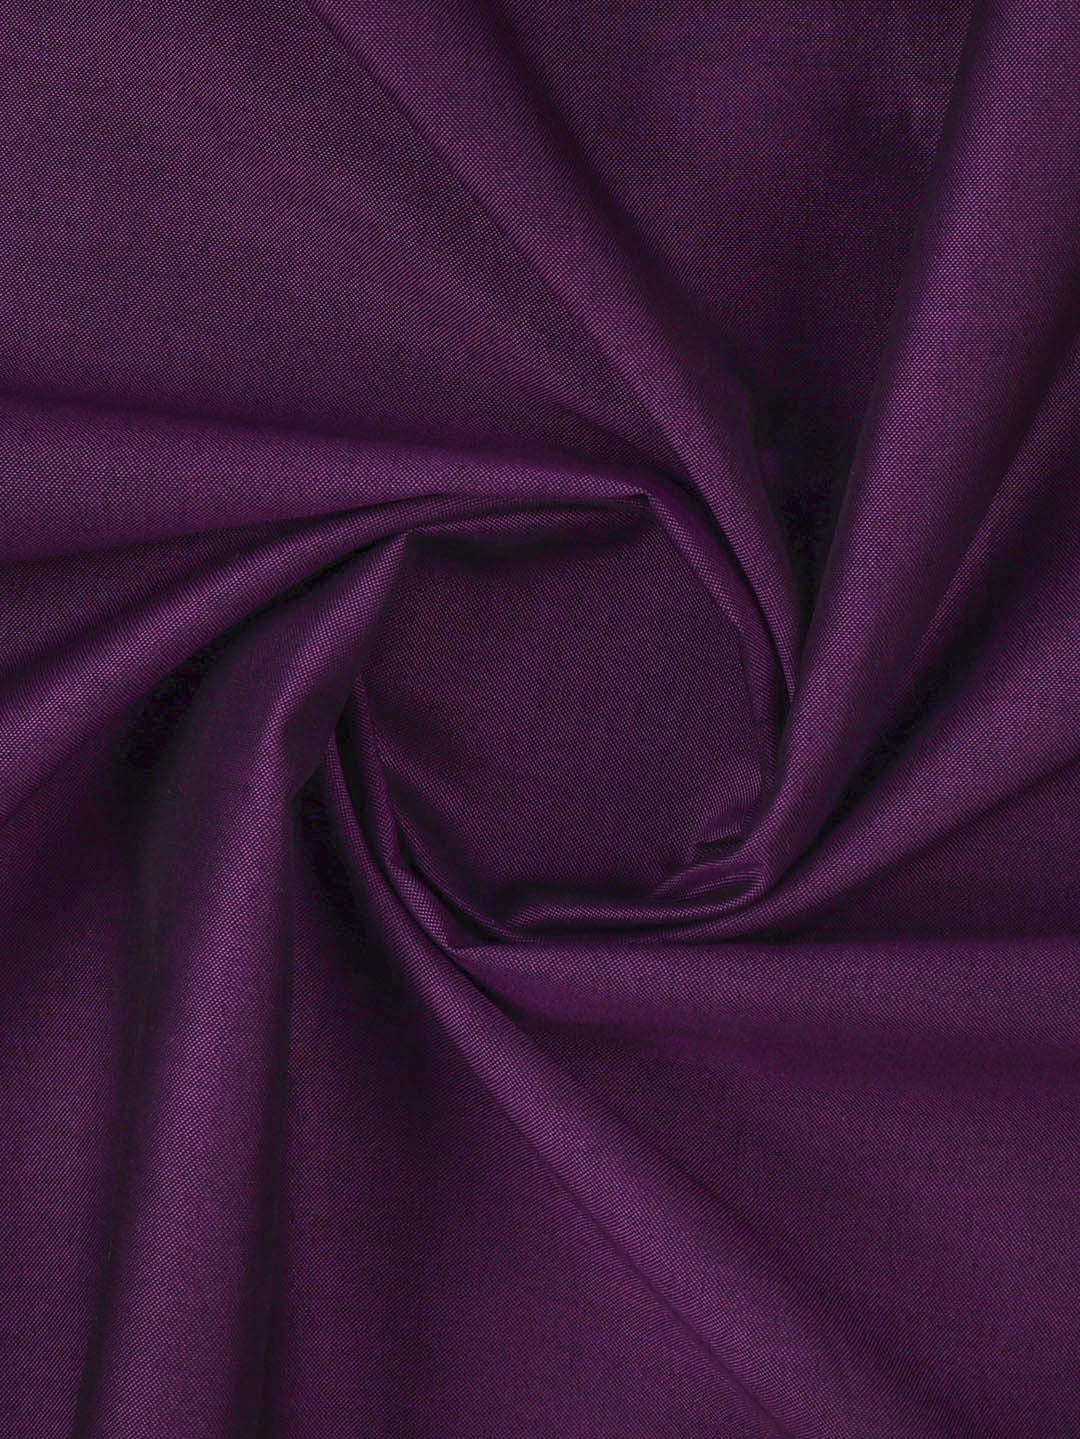 Cotton Blend Violet Colour Plain Shirt Fabric Infinity